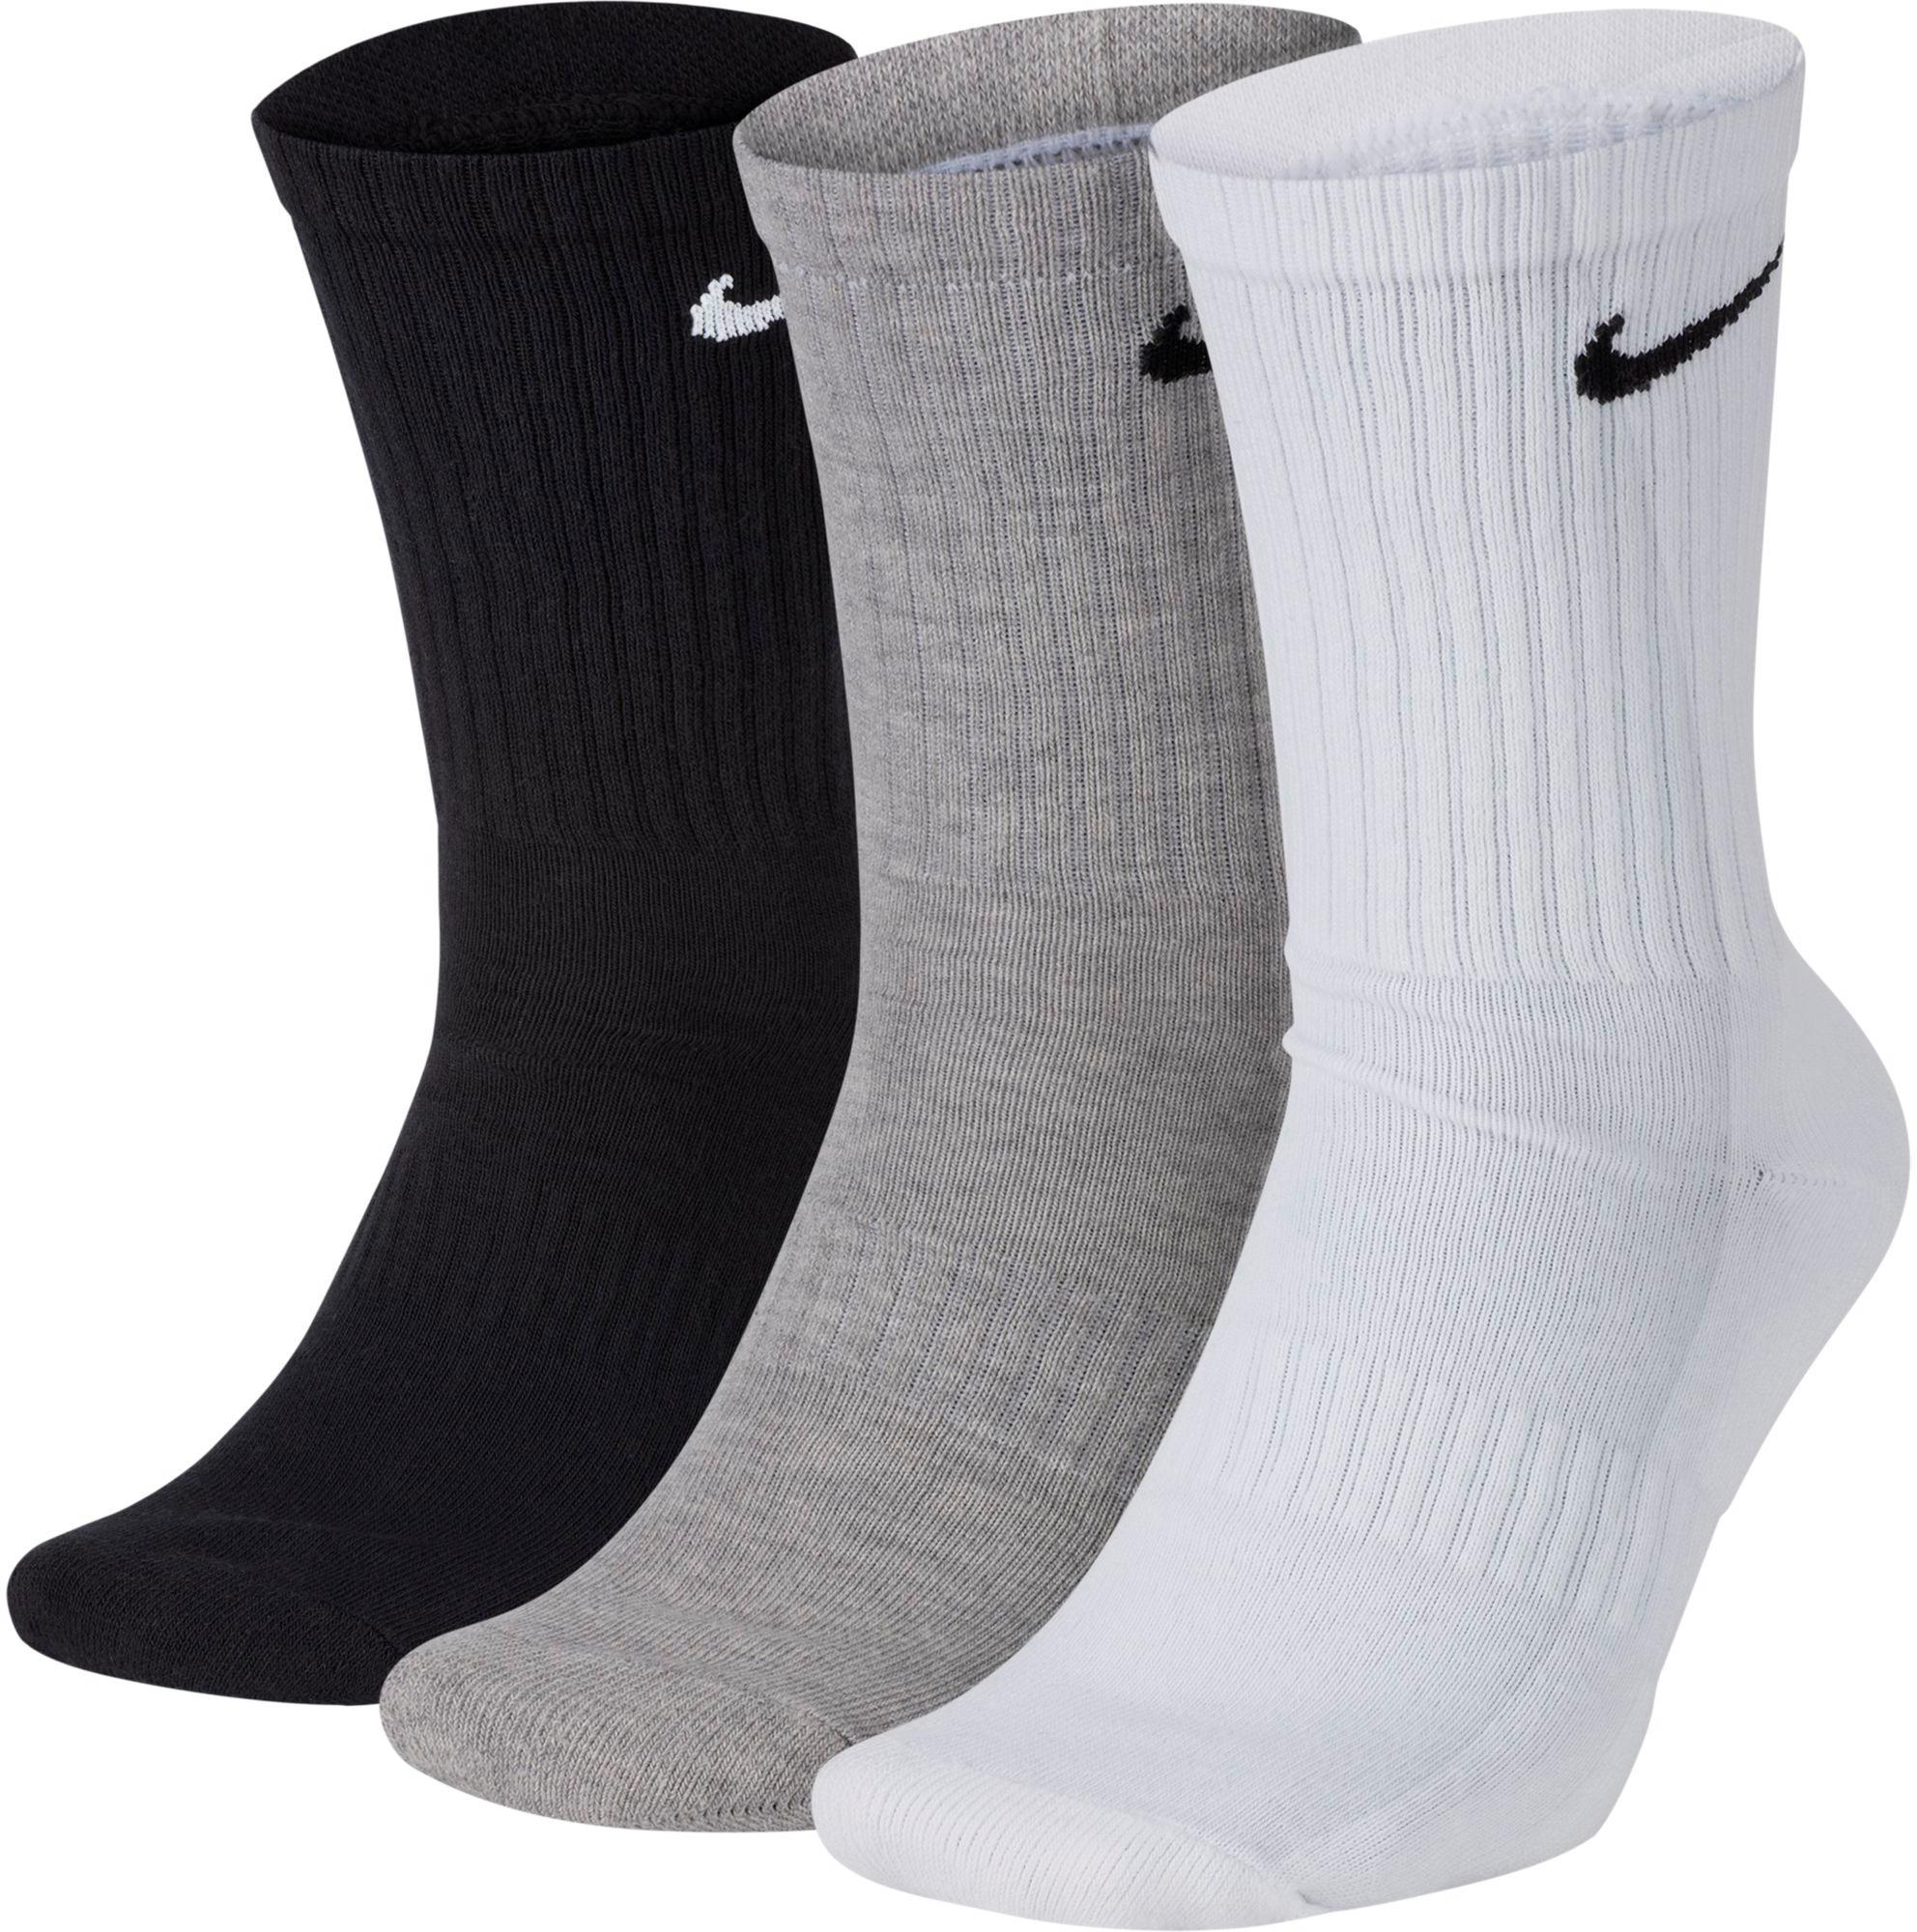 Nike Socken Jetzt Bei Sportscheck Online Kaufen